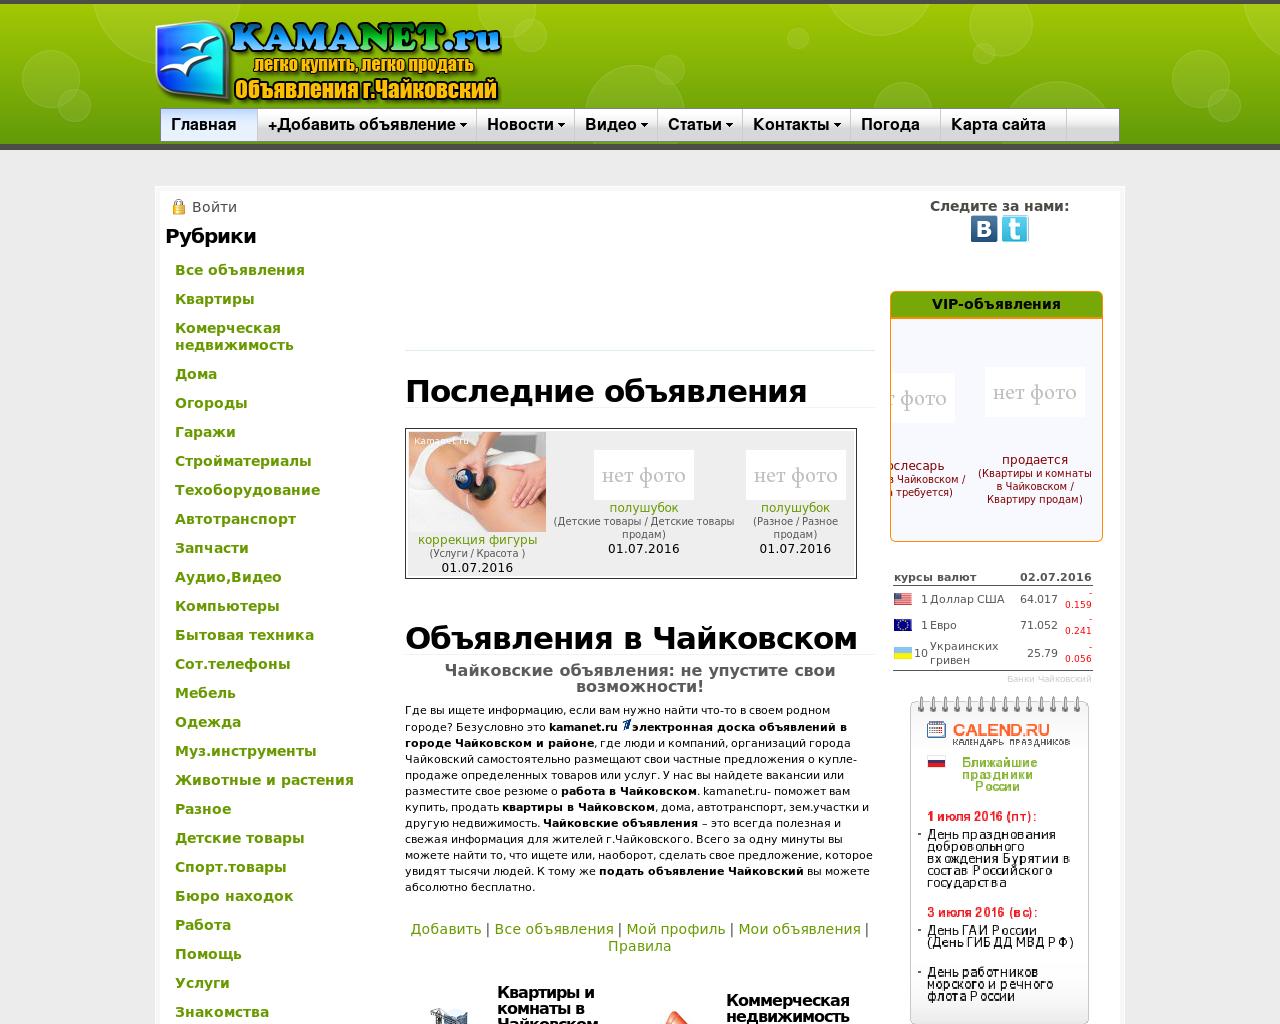 Изображение сайта kamanet.ru в разрешении 1280x1024